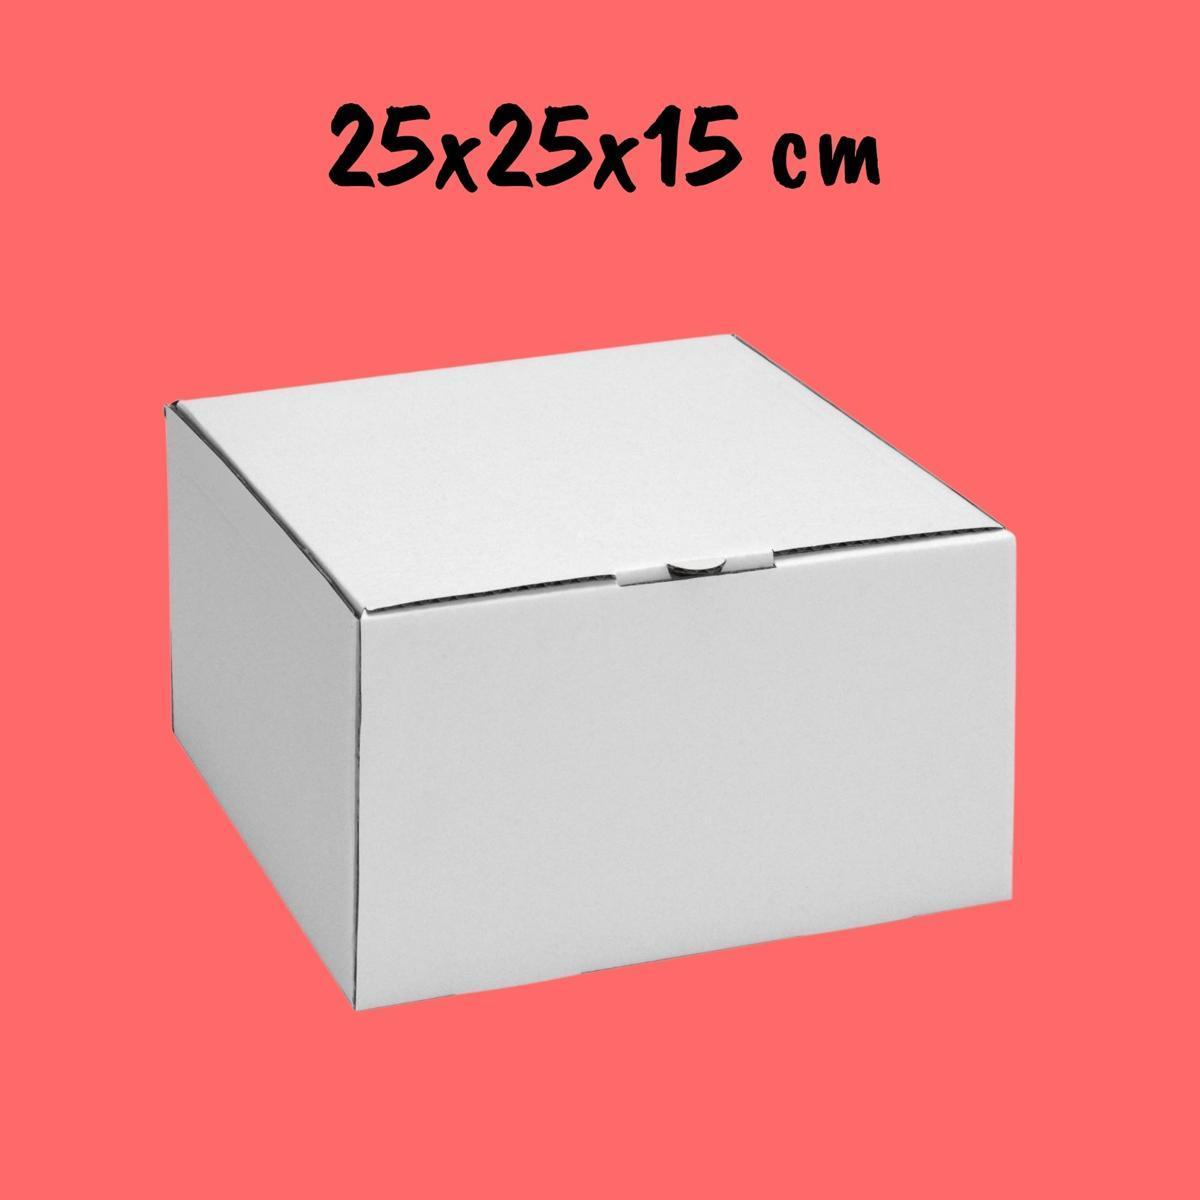 Caixa Para Bolo 25x25x15cm - Pacote com 10 unidades